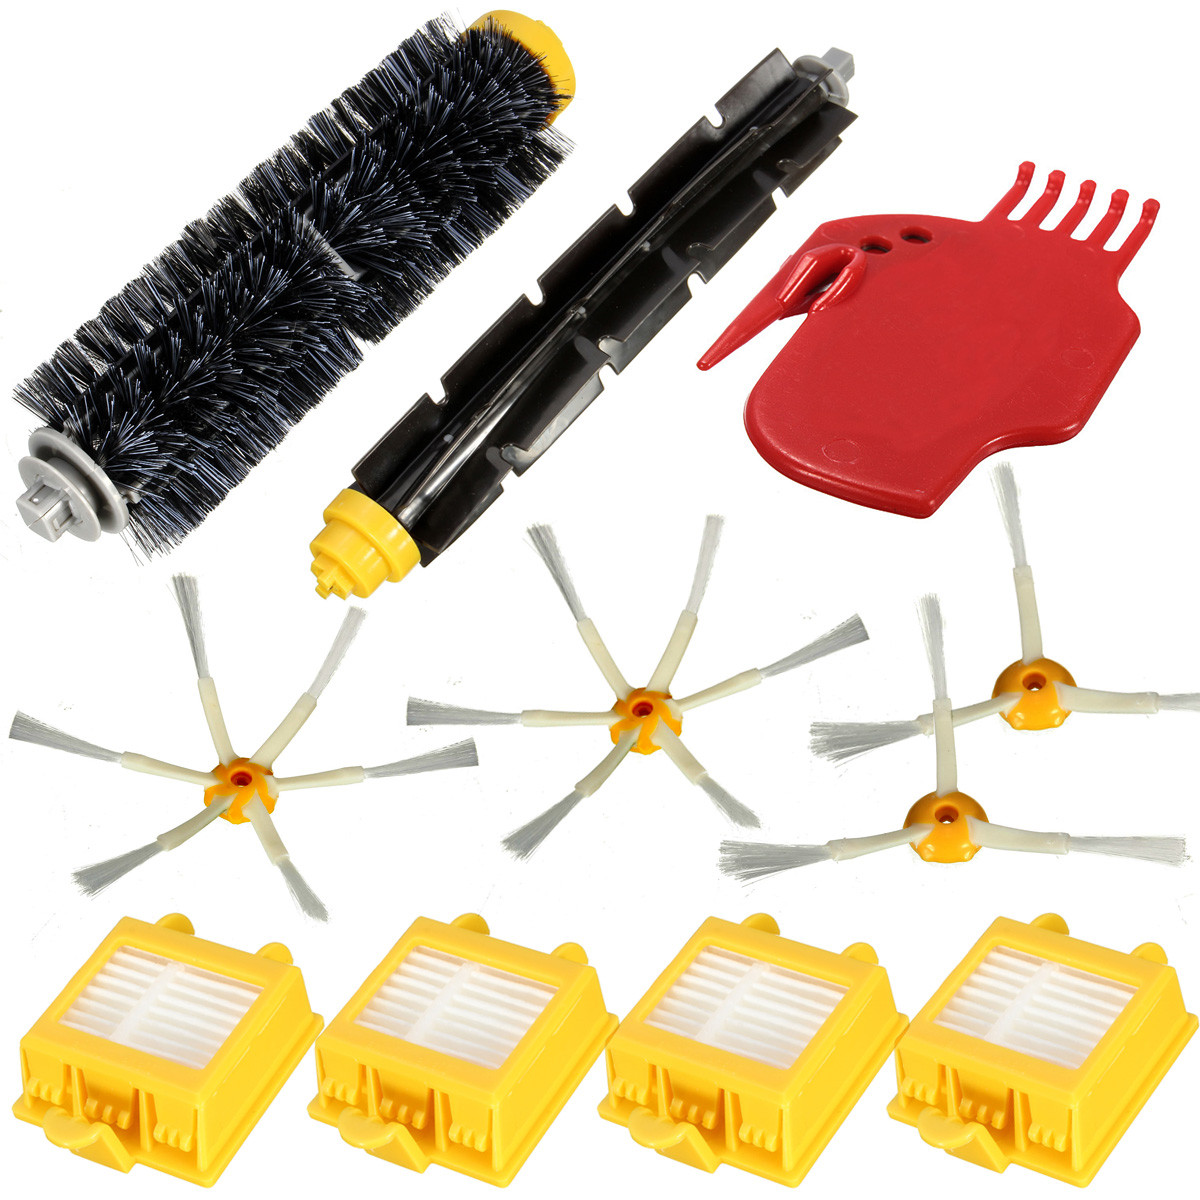 Filter Brush Kit for iRobot Roomba 700 Series 760 770 780 785 790 Vacuum Cleaner 